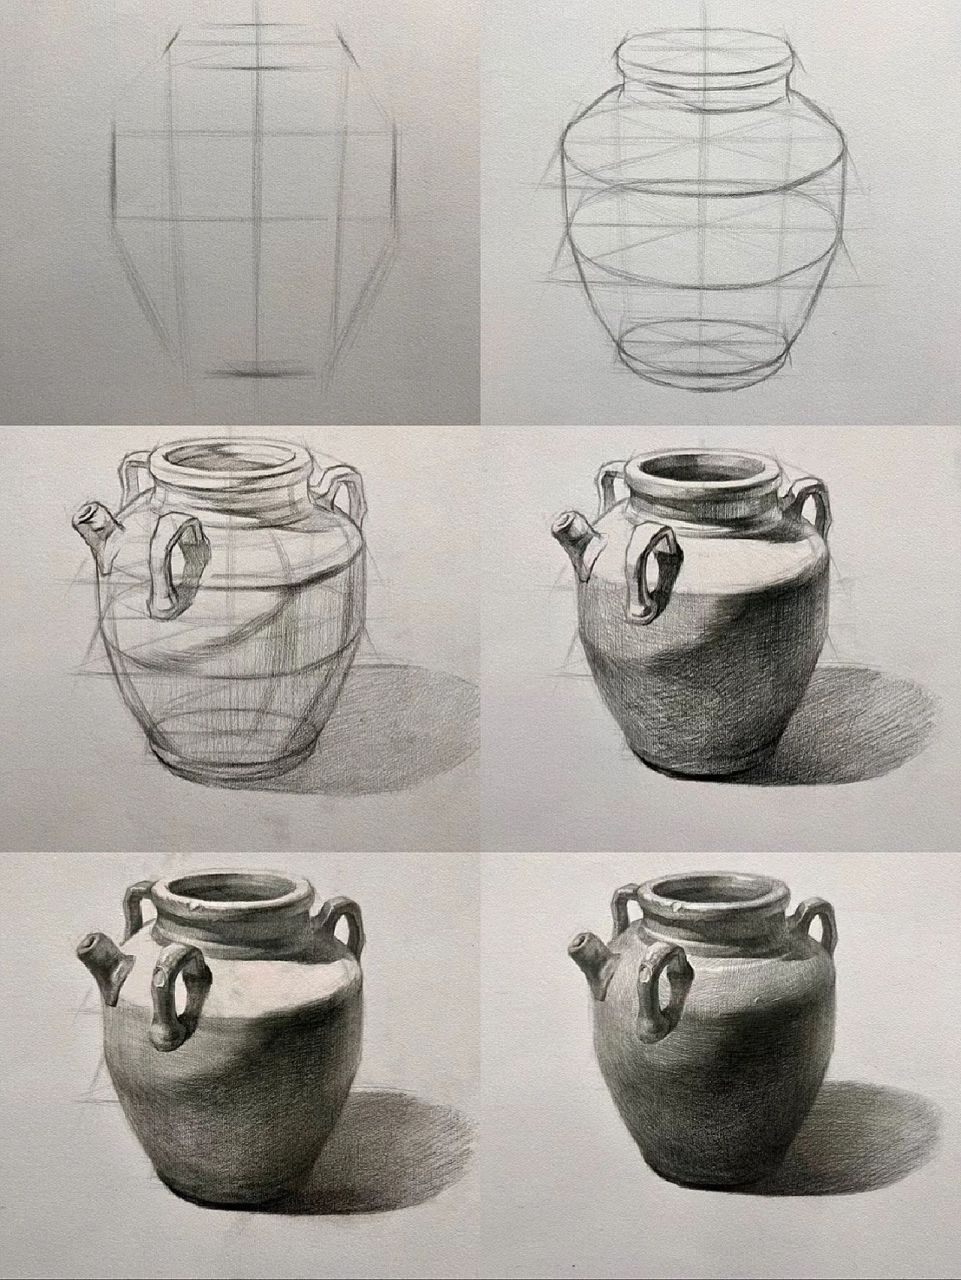 素描静物罐子画法步骤图片